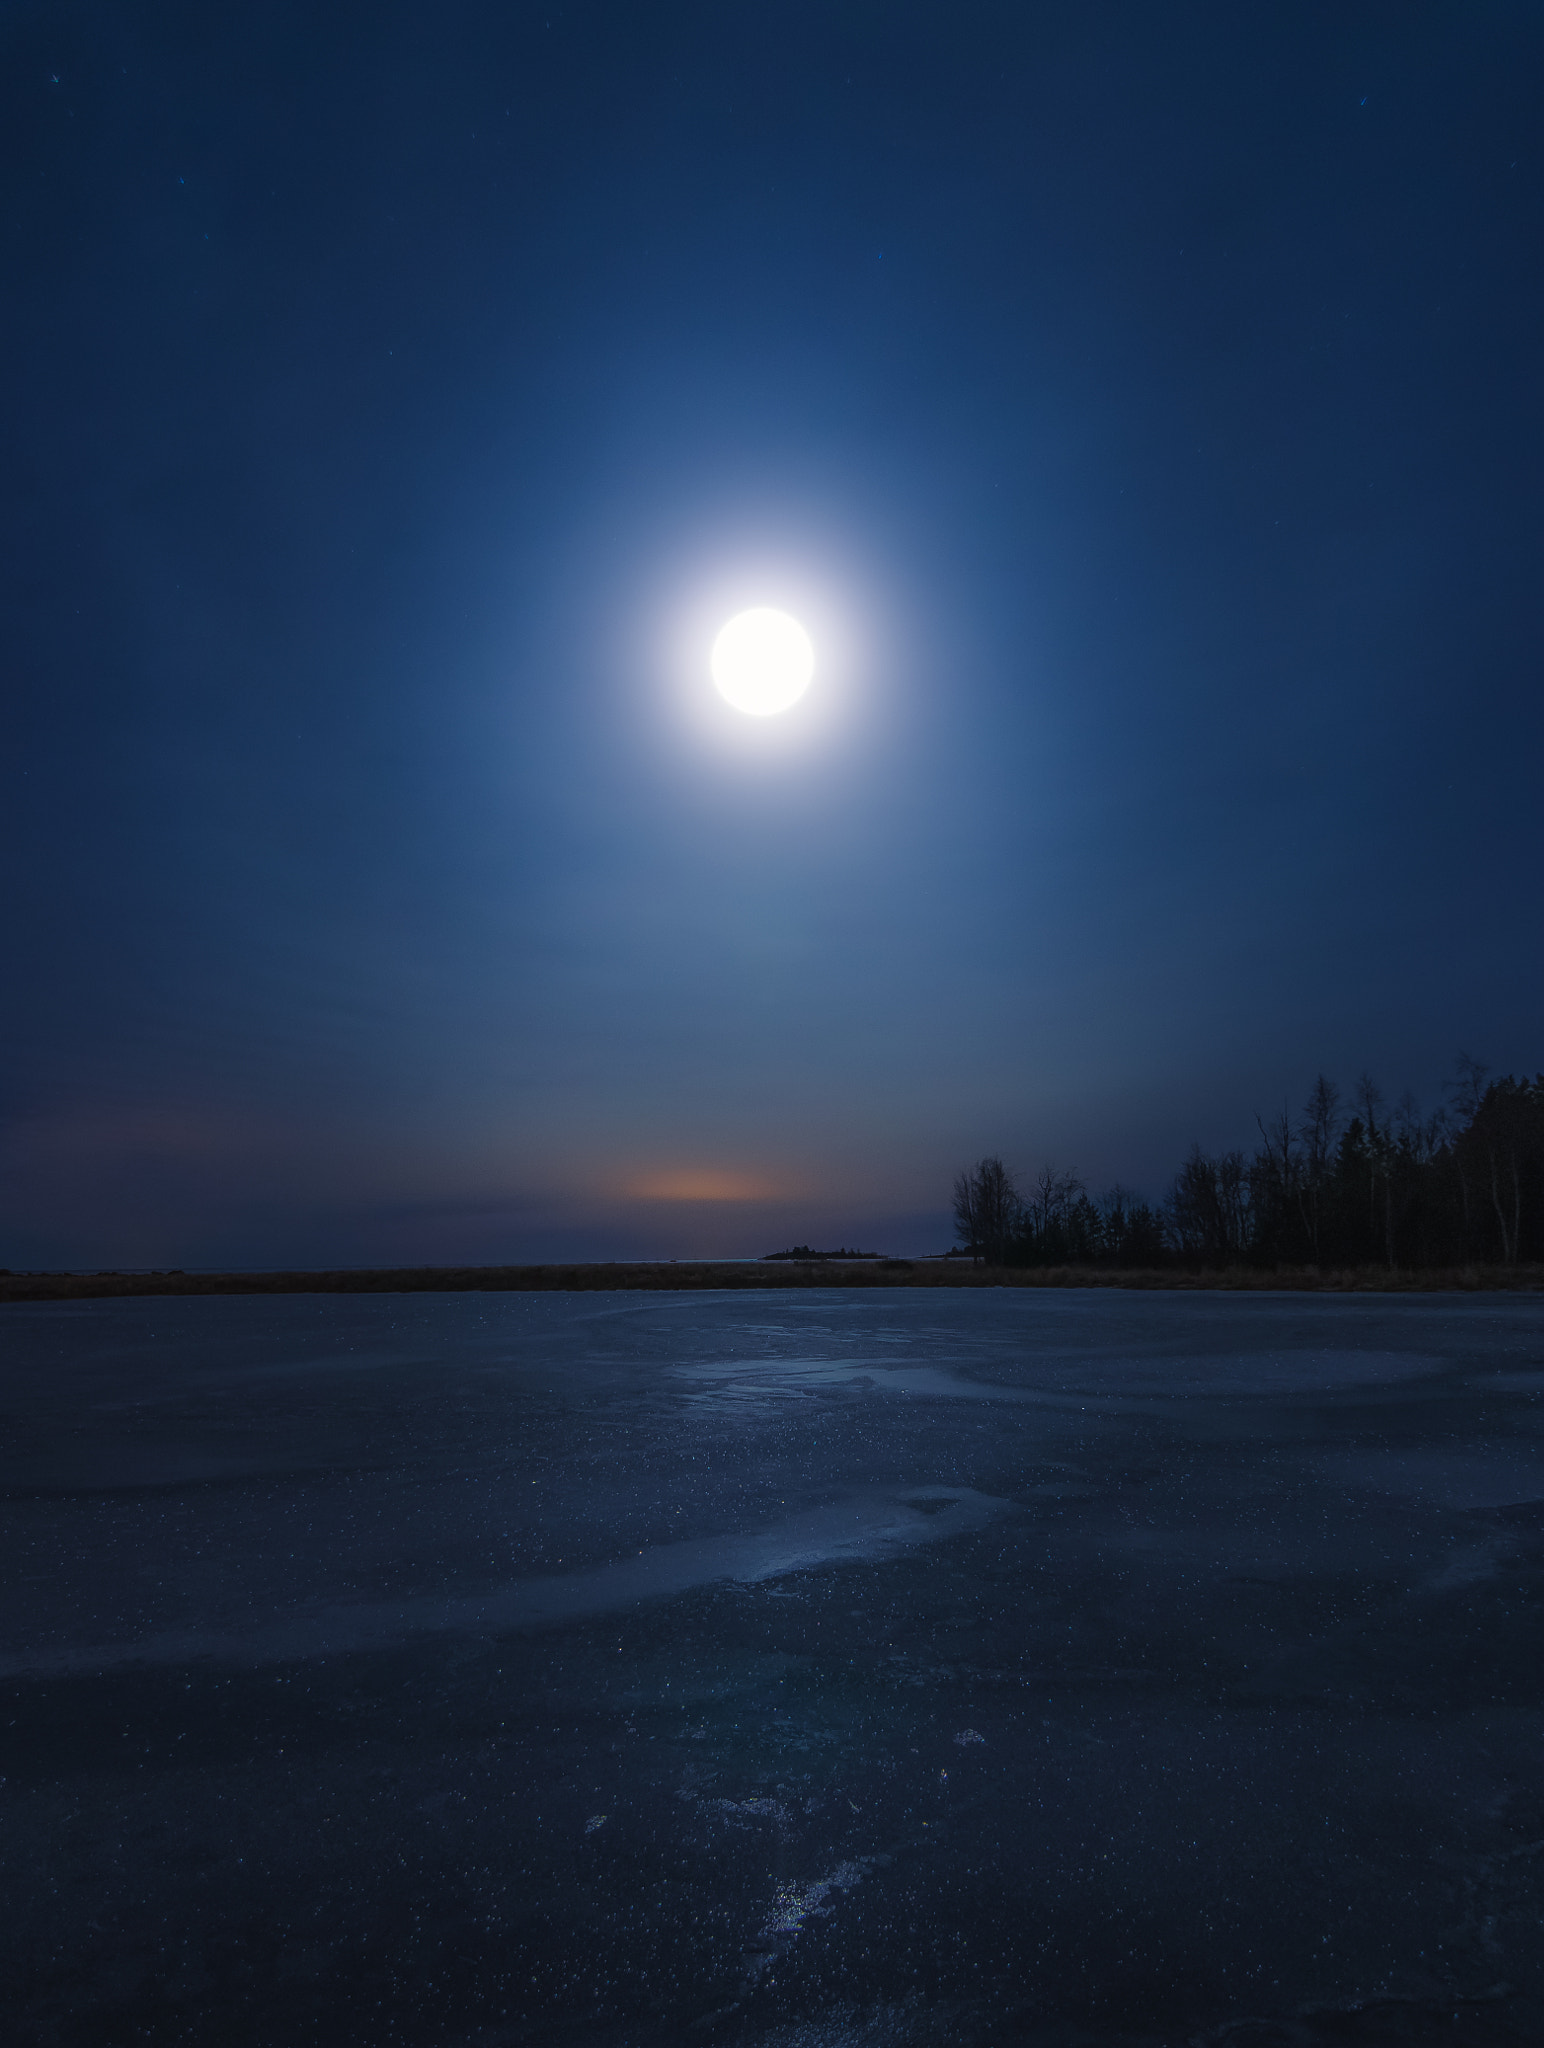 Nikon D7000 sample photo. A moonlit evening photography